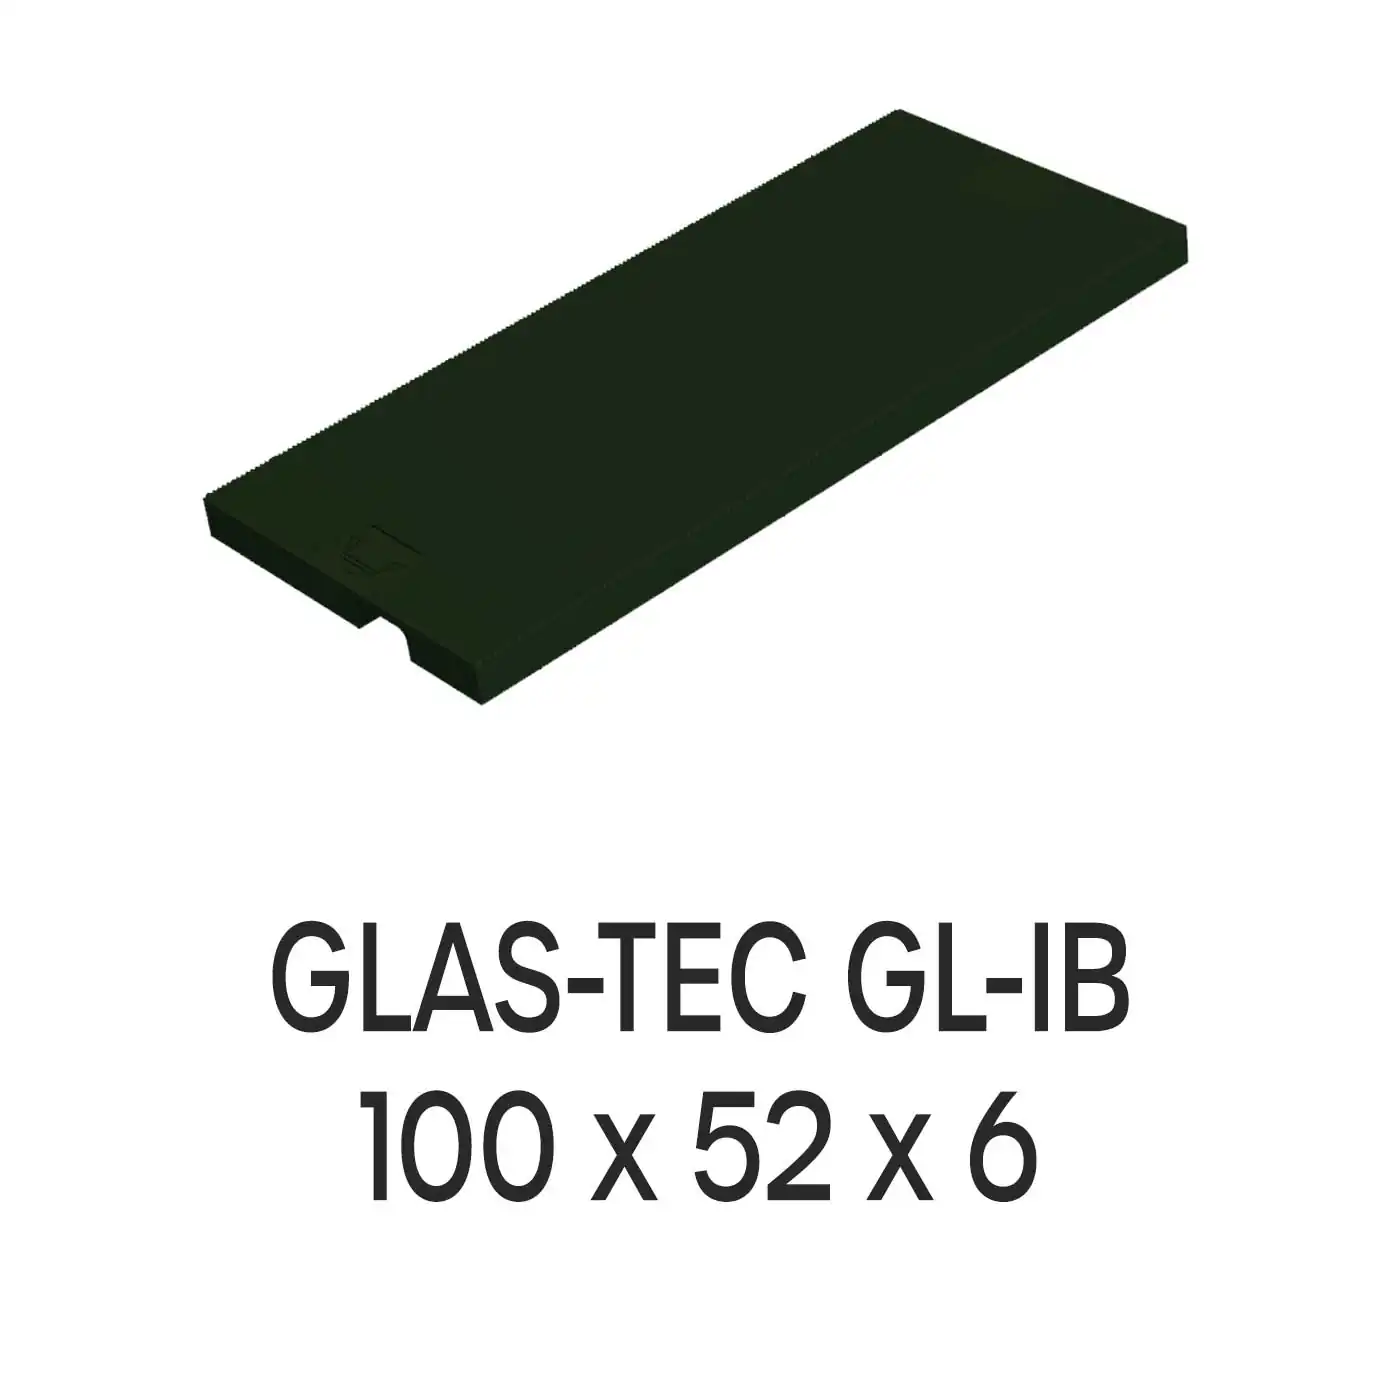 Roto Verglasungsklotz GLAS-TEC GL-IB, 100 x 52 x 6 mm, schwarz, 500 Stück